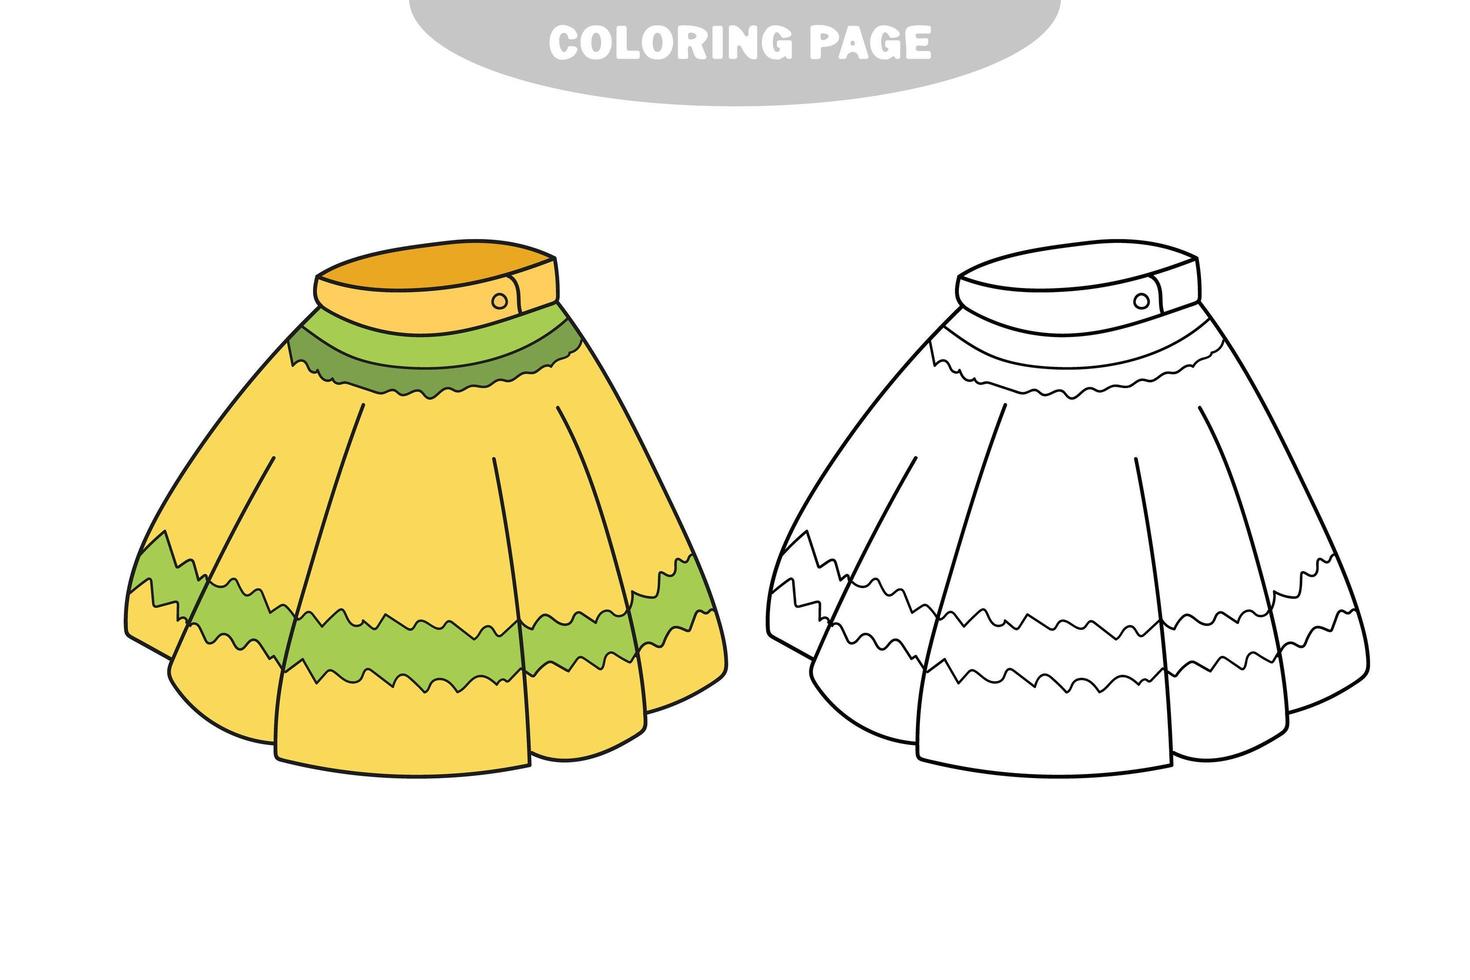 enkel målarbok. kjol som ska färgläggas, målarboken vektor